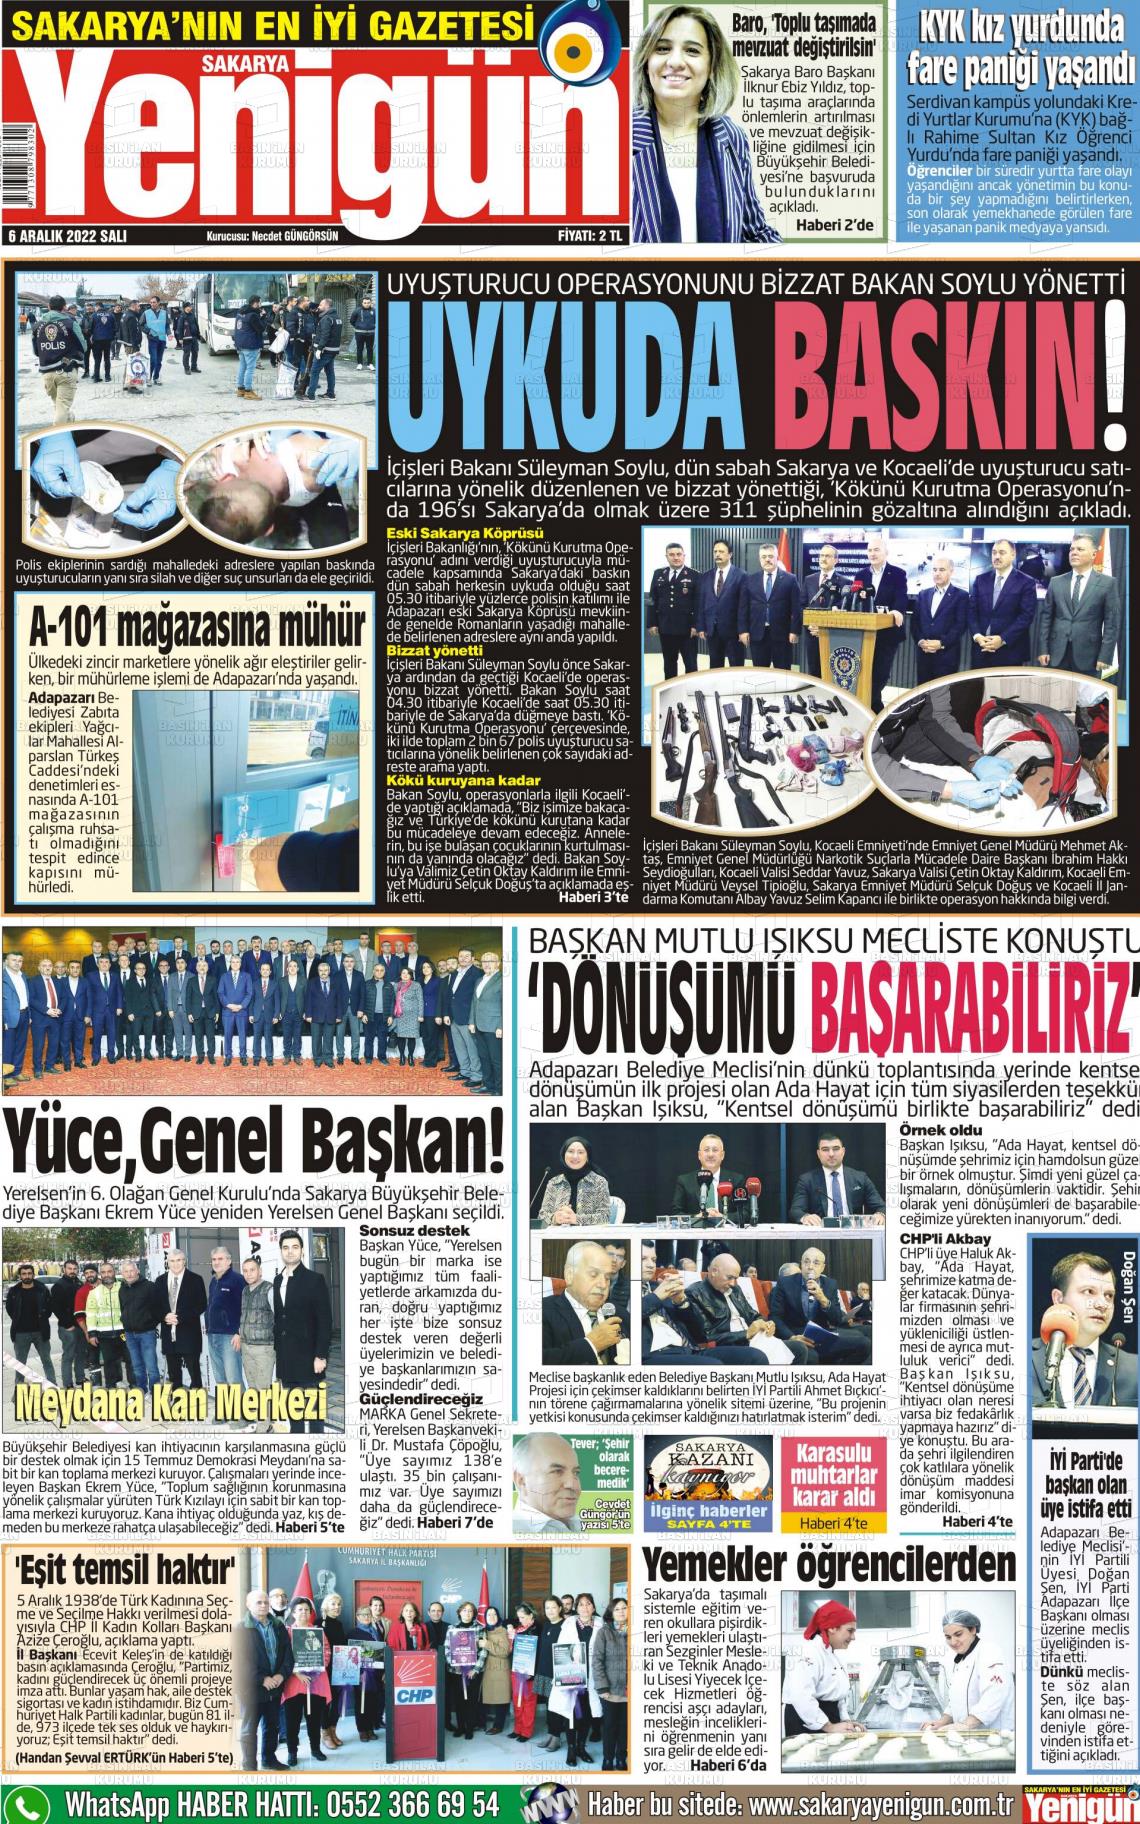 06 Aralık 2022 Sakarya Yenigün Gazete Manşeti